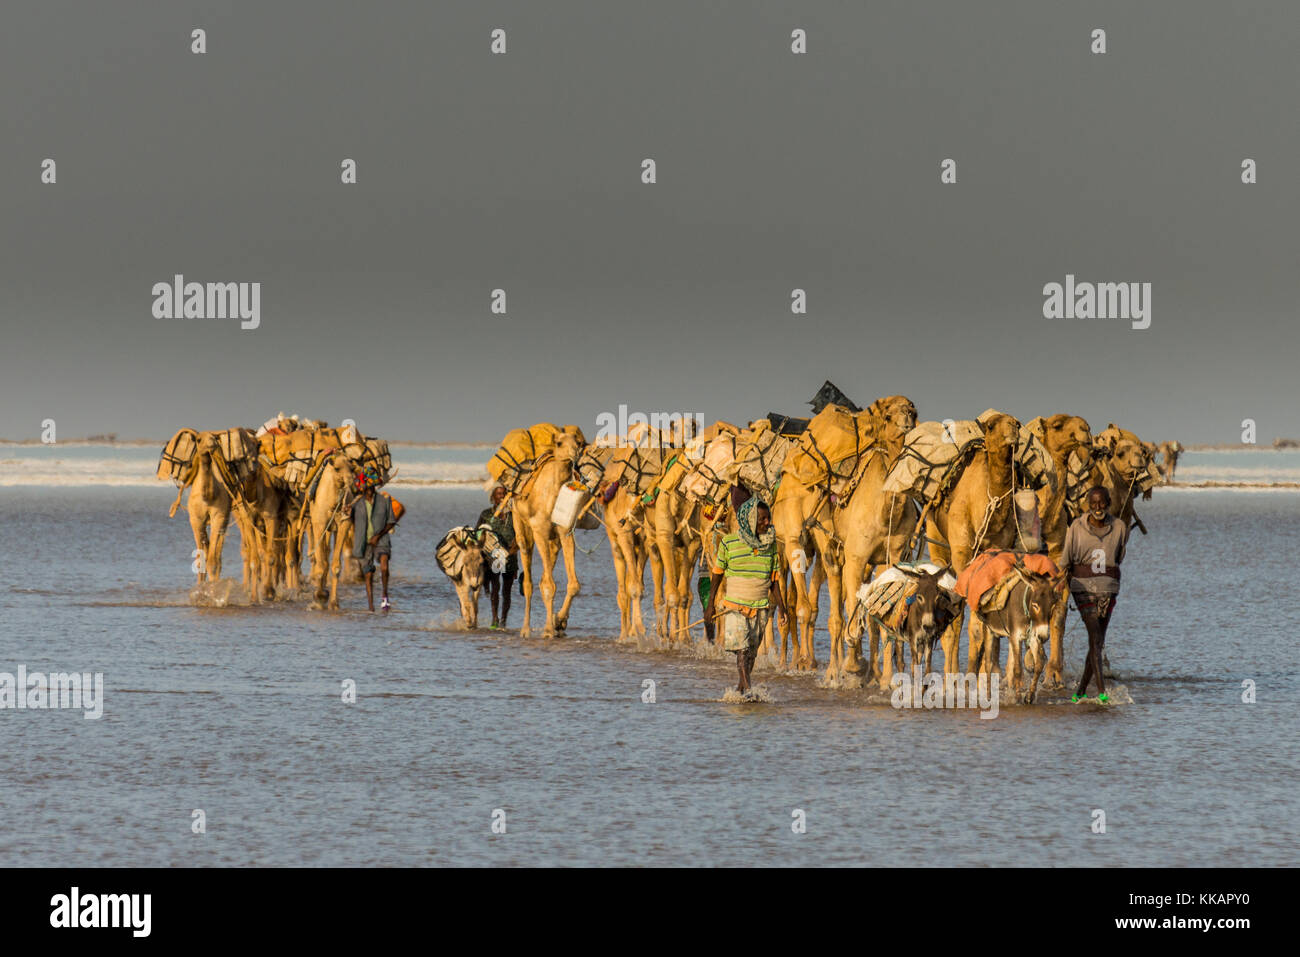 Caravane de chameaux marche dans la chaleur à travers un lac salé, la dépression Danakil, l'Éthiopie, l'Afrique Banque D'Images